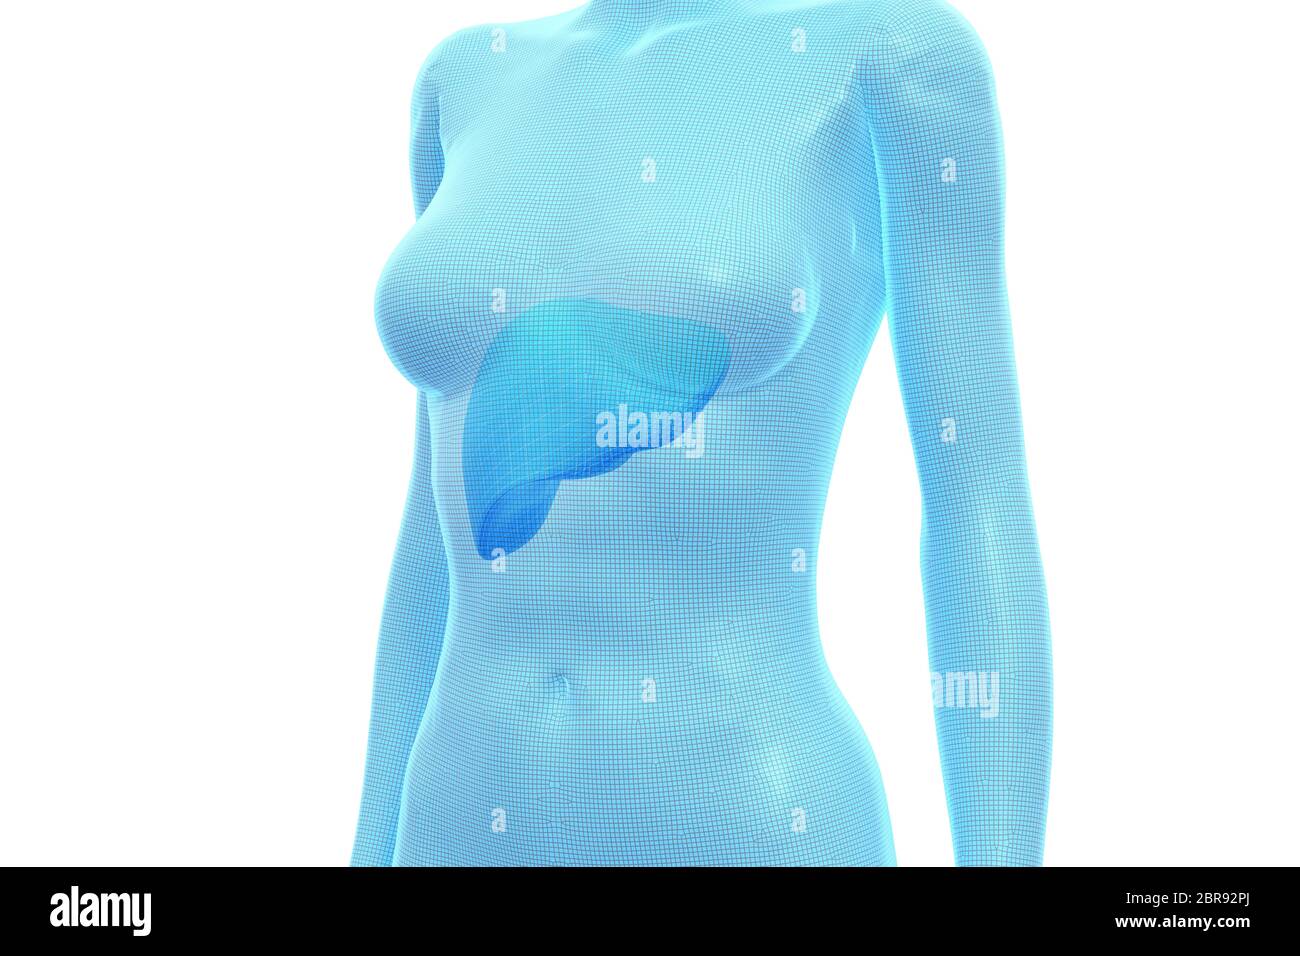 Leber, weiblicher menschlicher Körper, internes Organ, medizinische 3D-Illustration Stockfoto